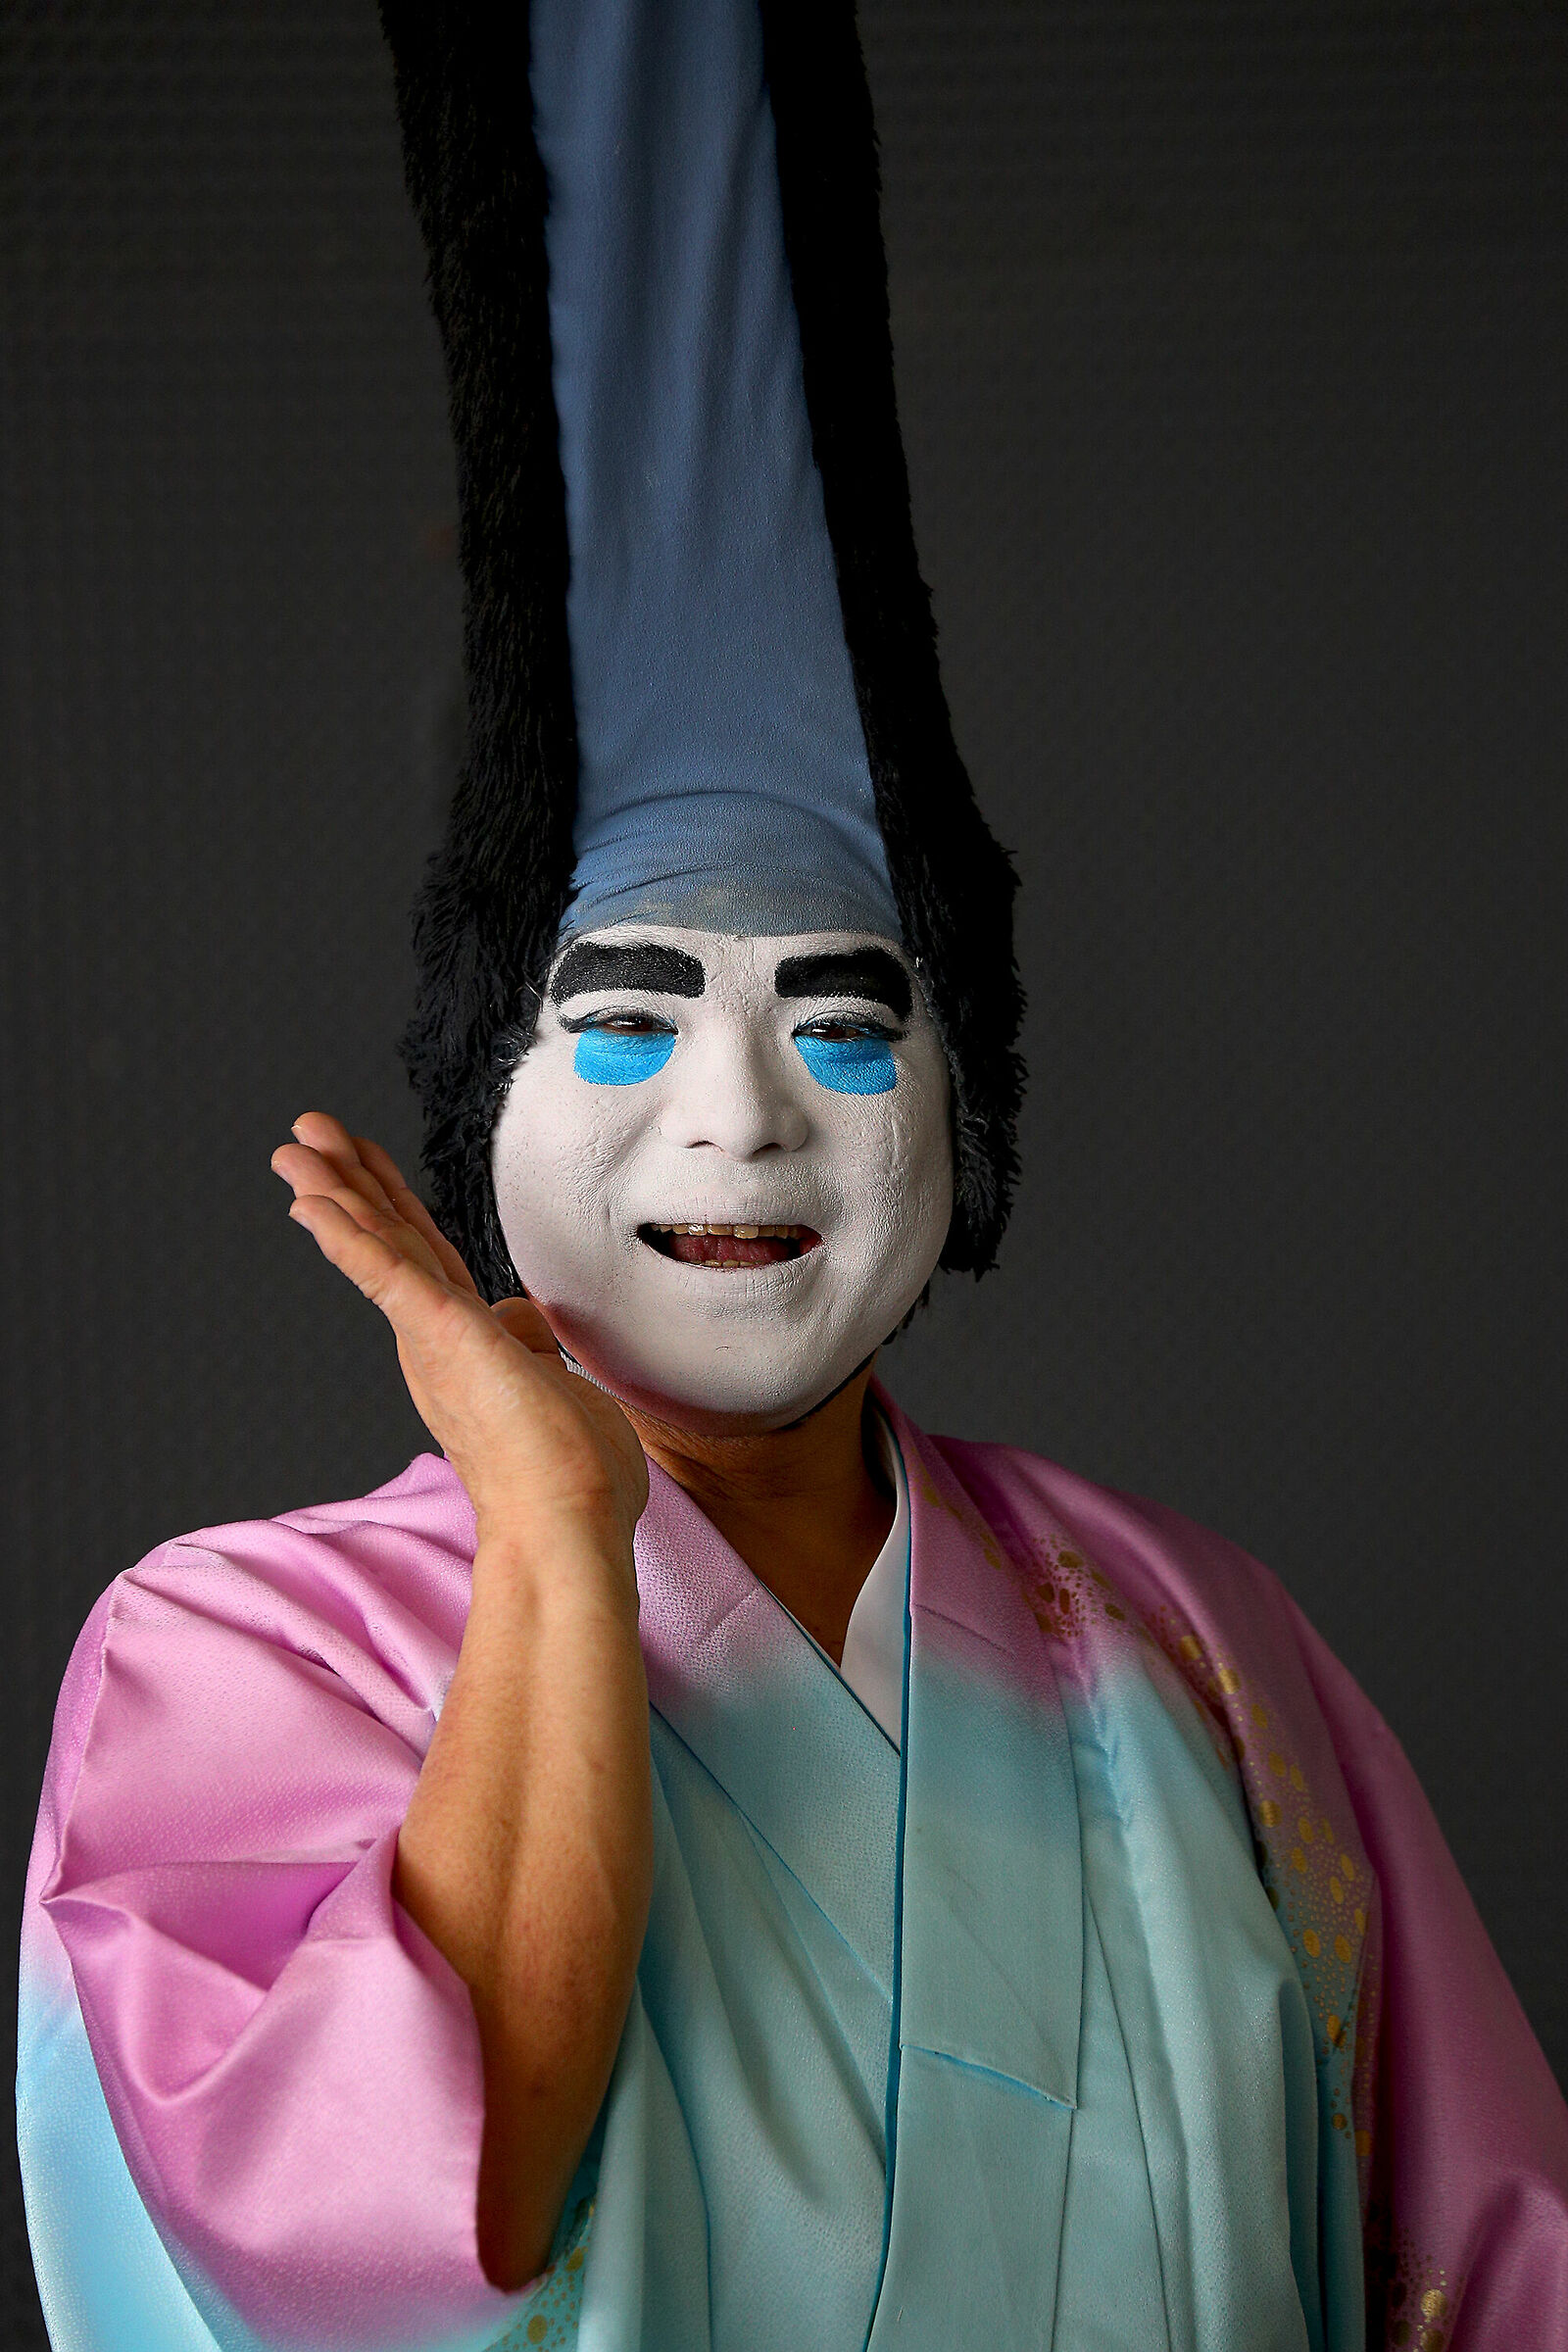 Very nice Japanese mime...